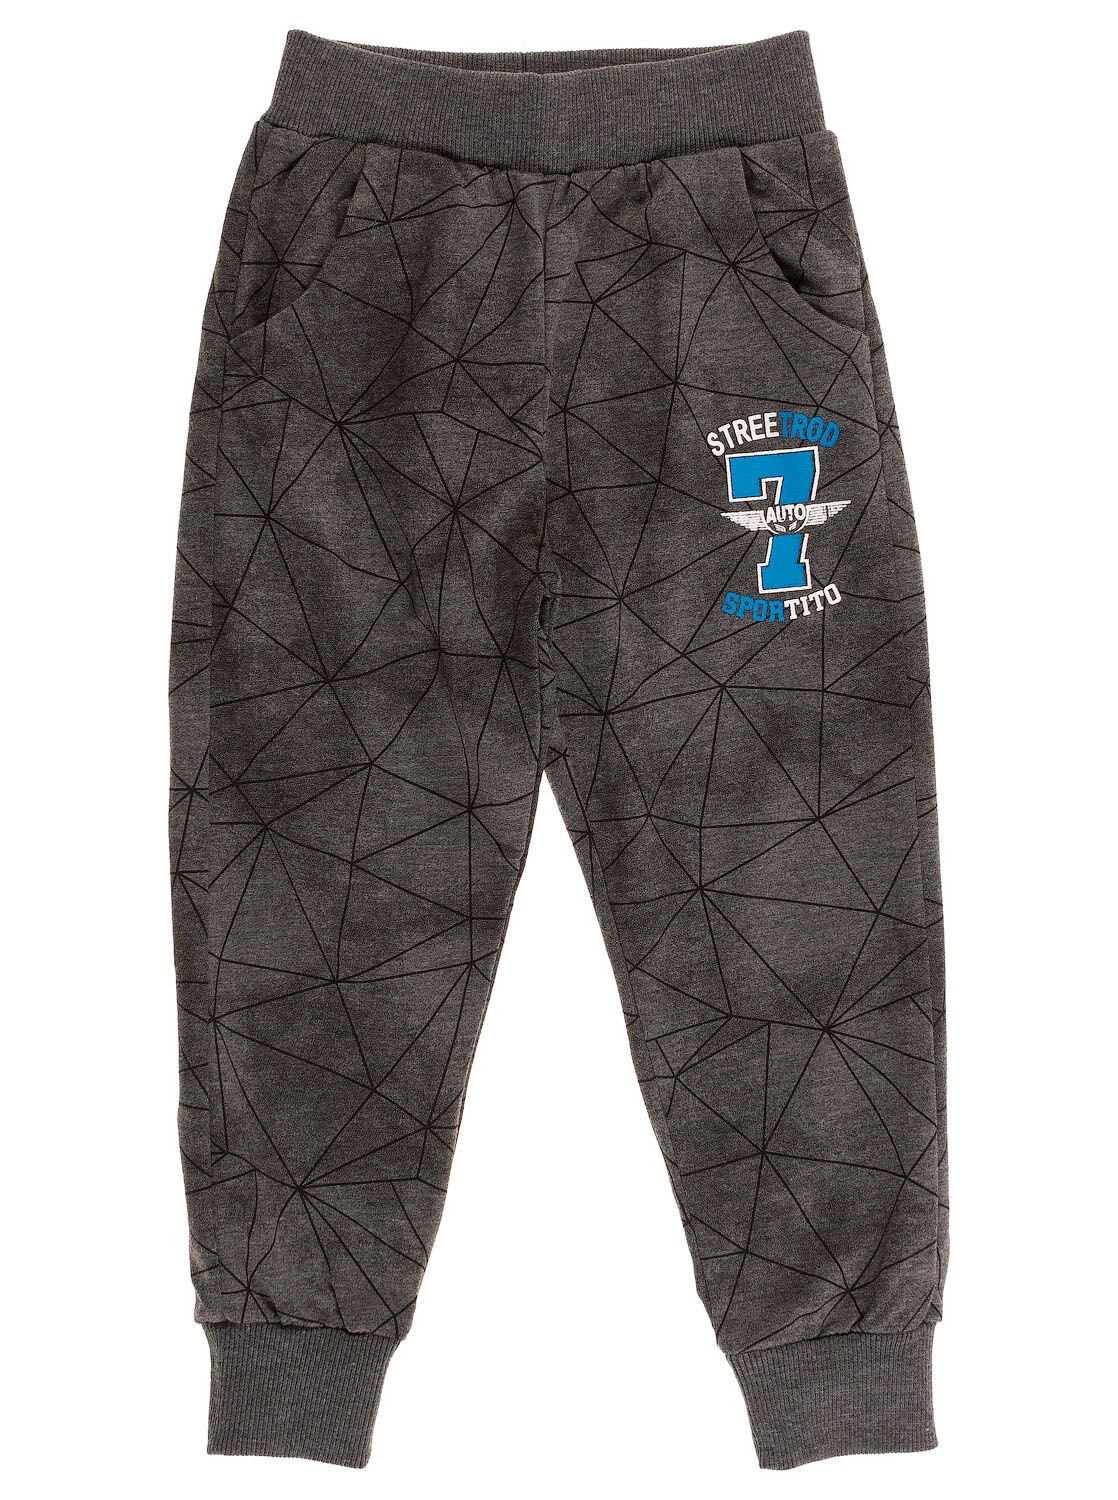 Спортивные штаны для мальчика Sincere серые 2015 - цена